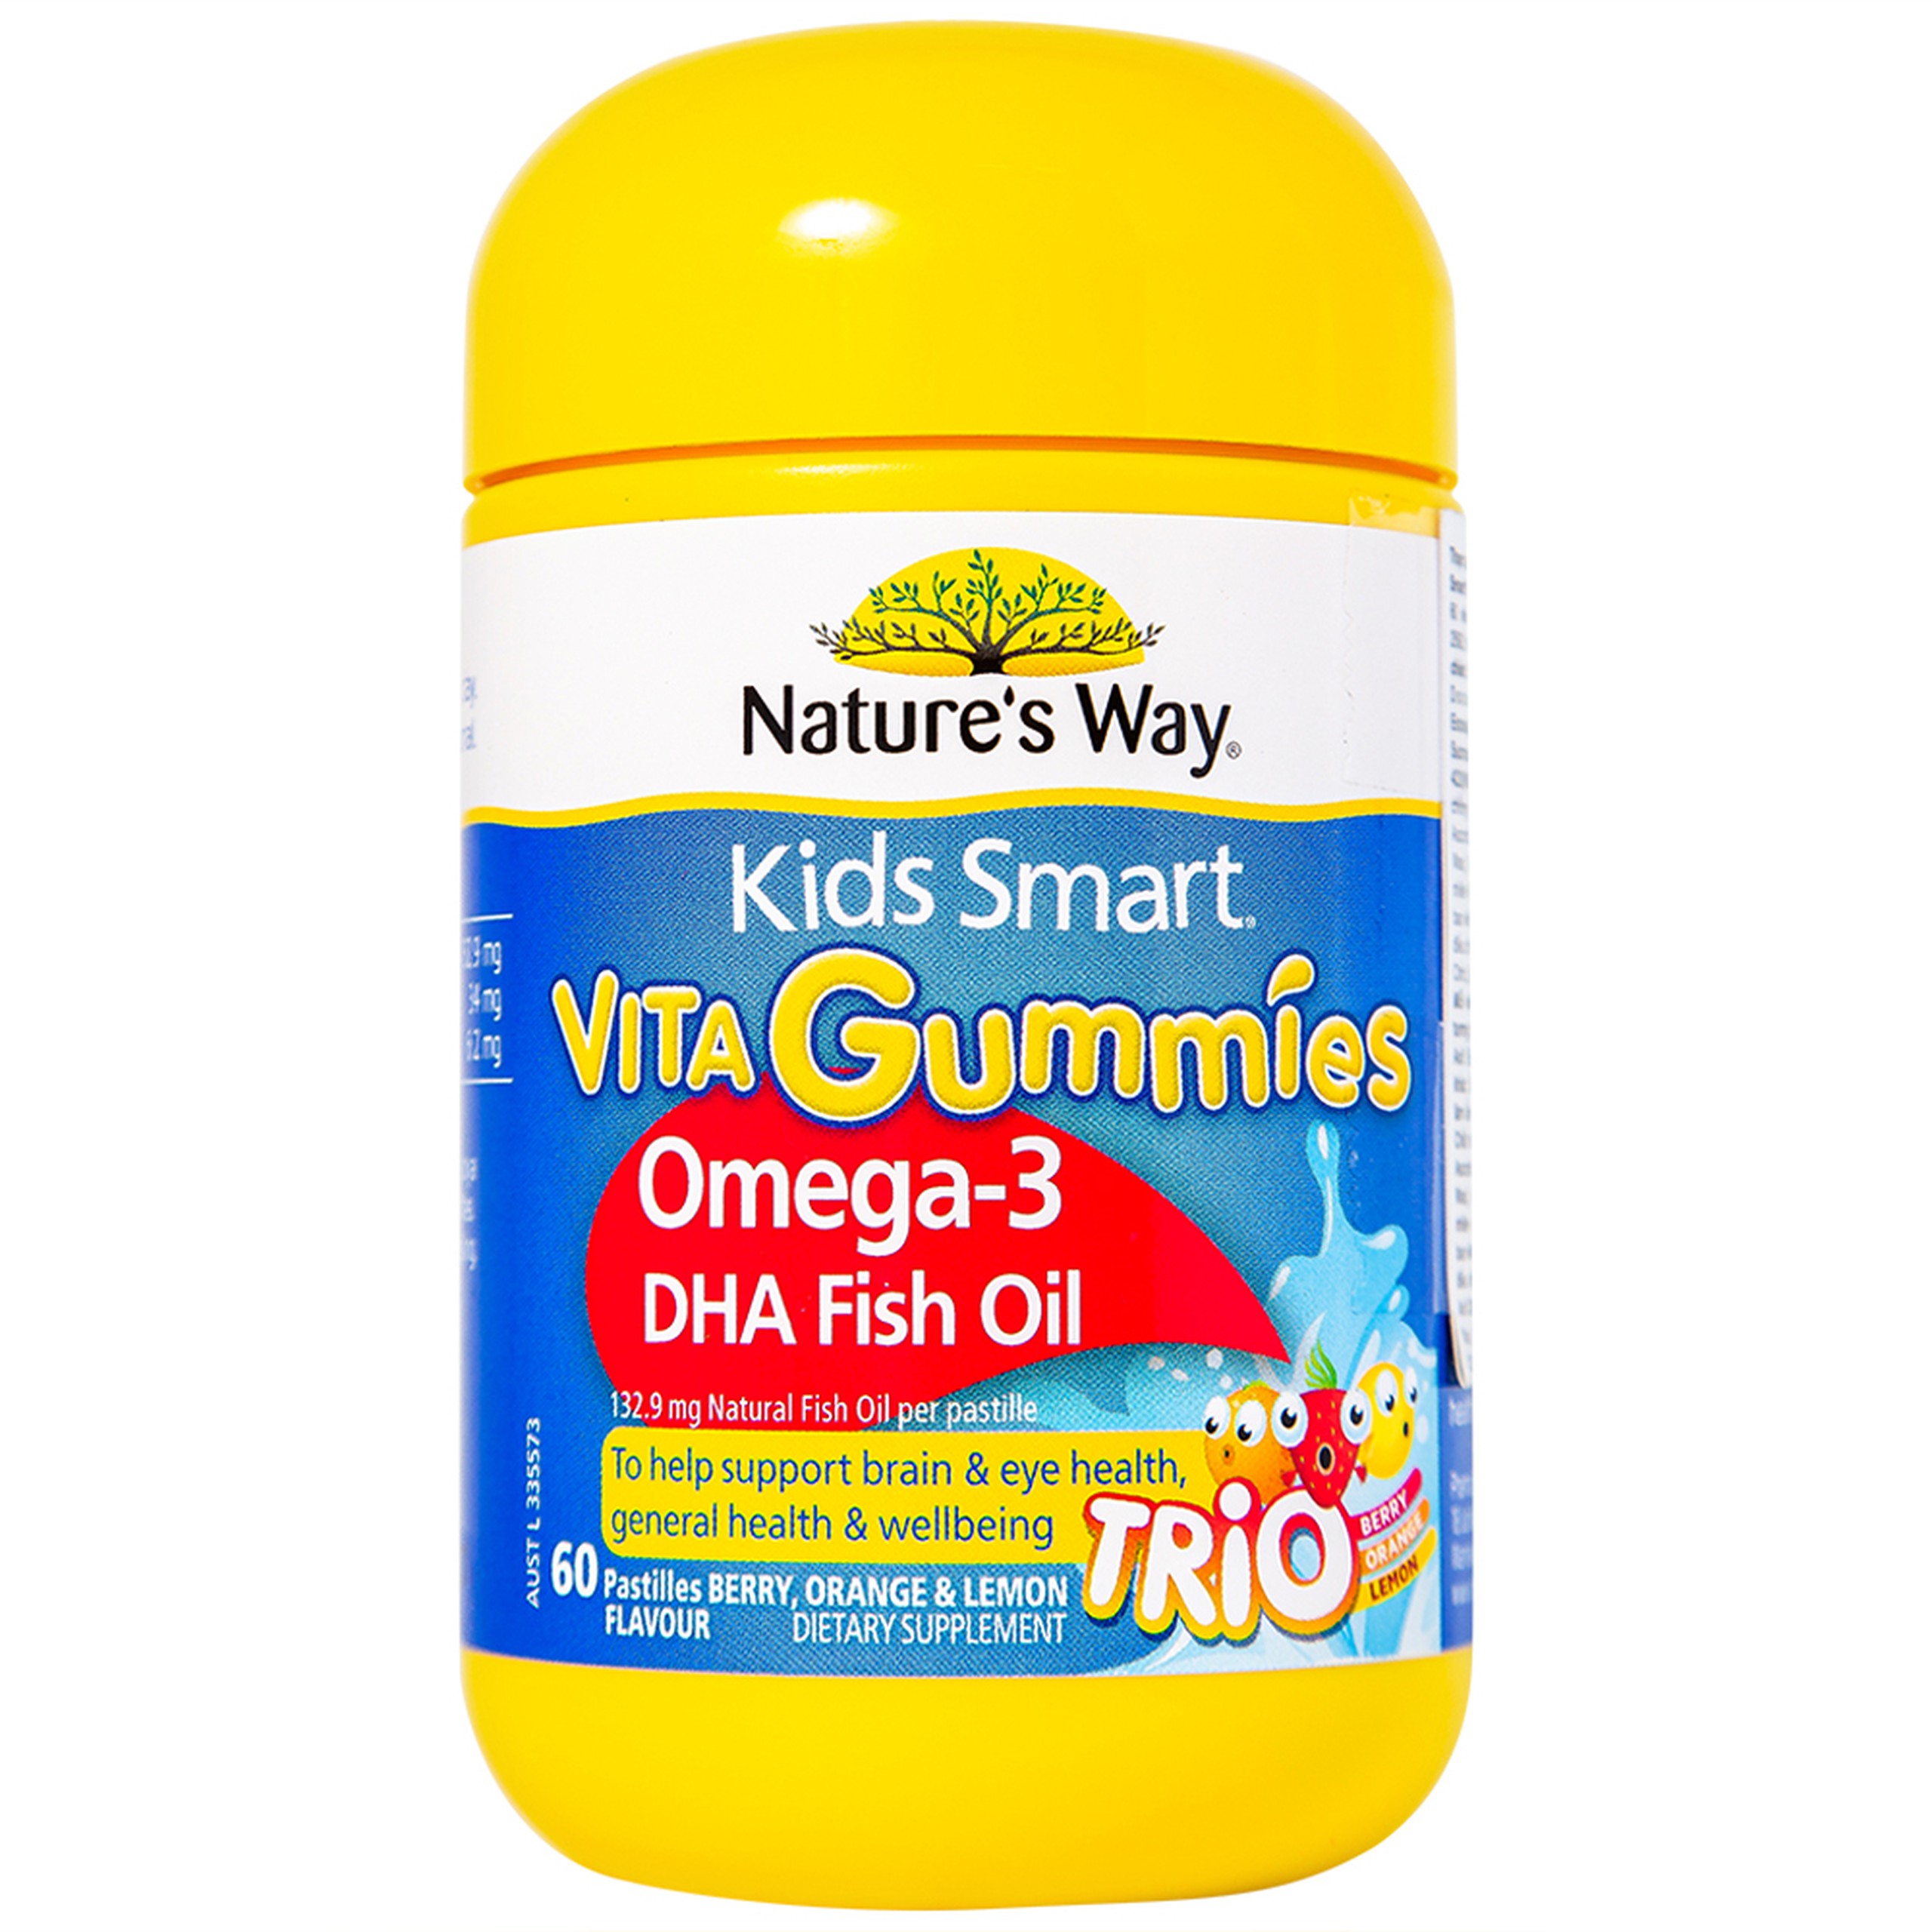 Viên nhai Nature's Way Kids Smart Vita Gummies Omega-3 DHA Fish Oil hỗ trợ tăng cường sức khỏe (60 viên)